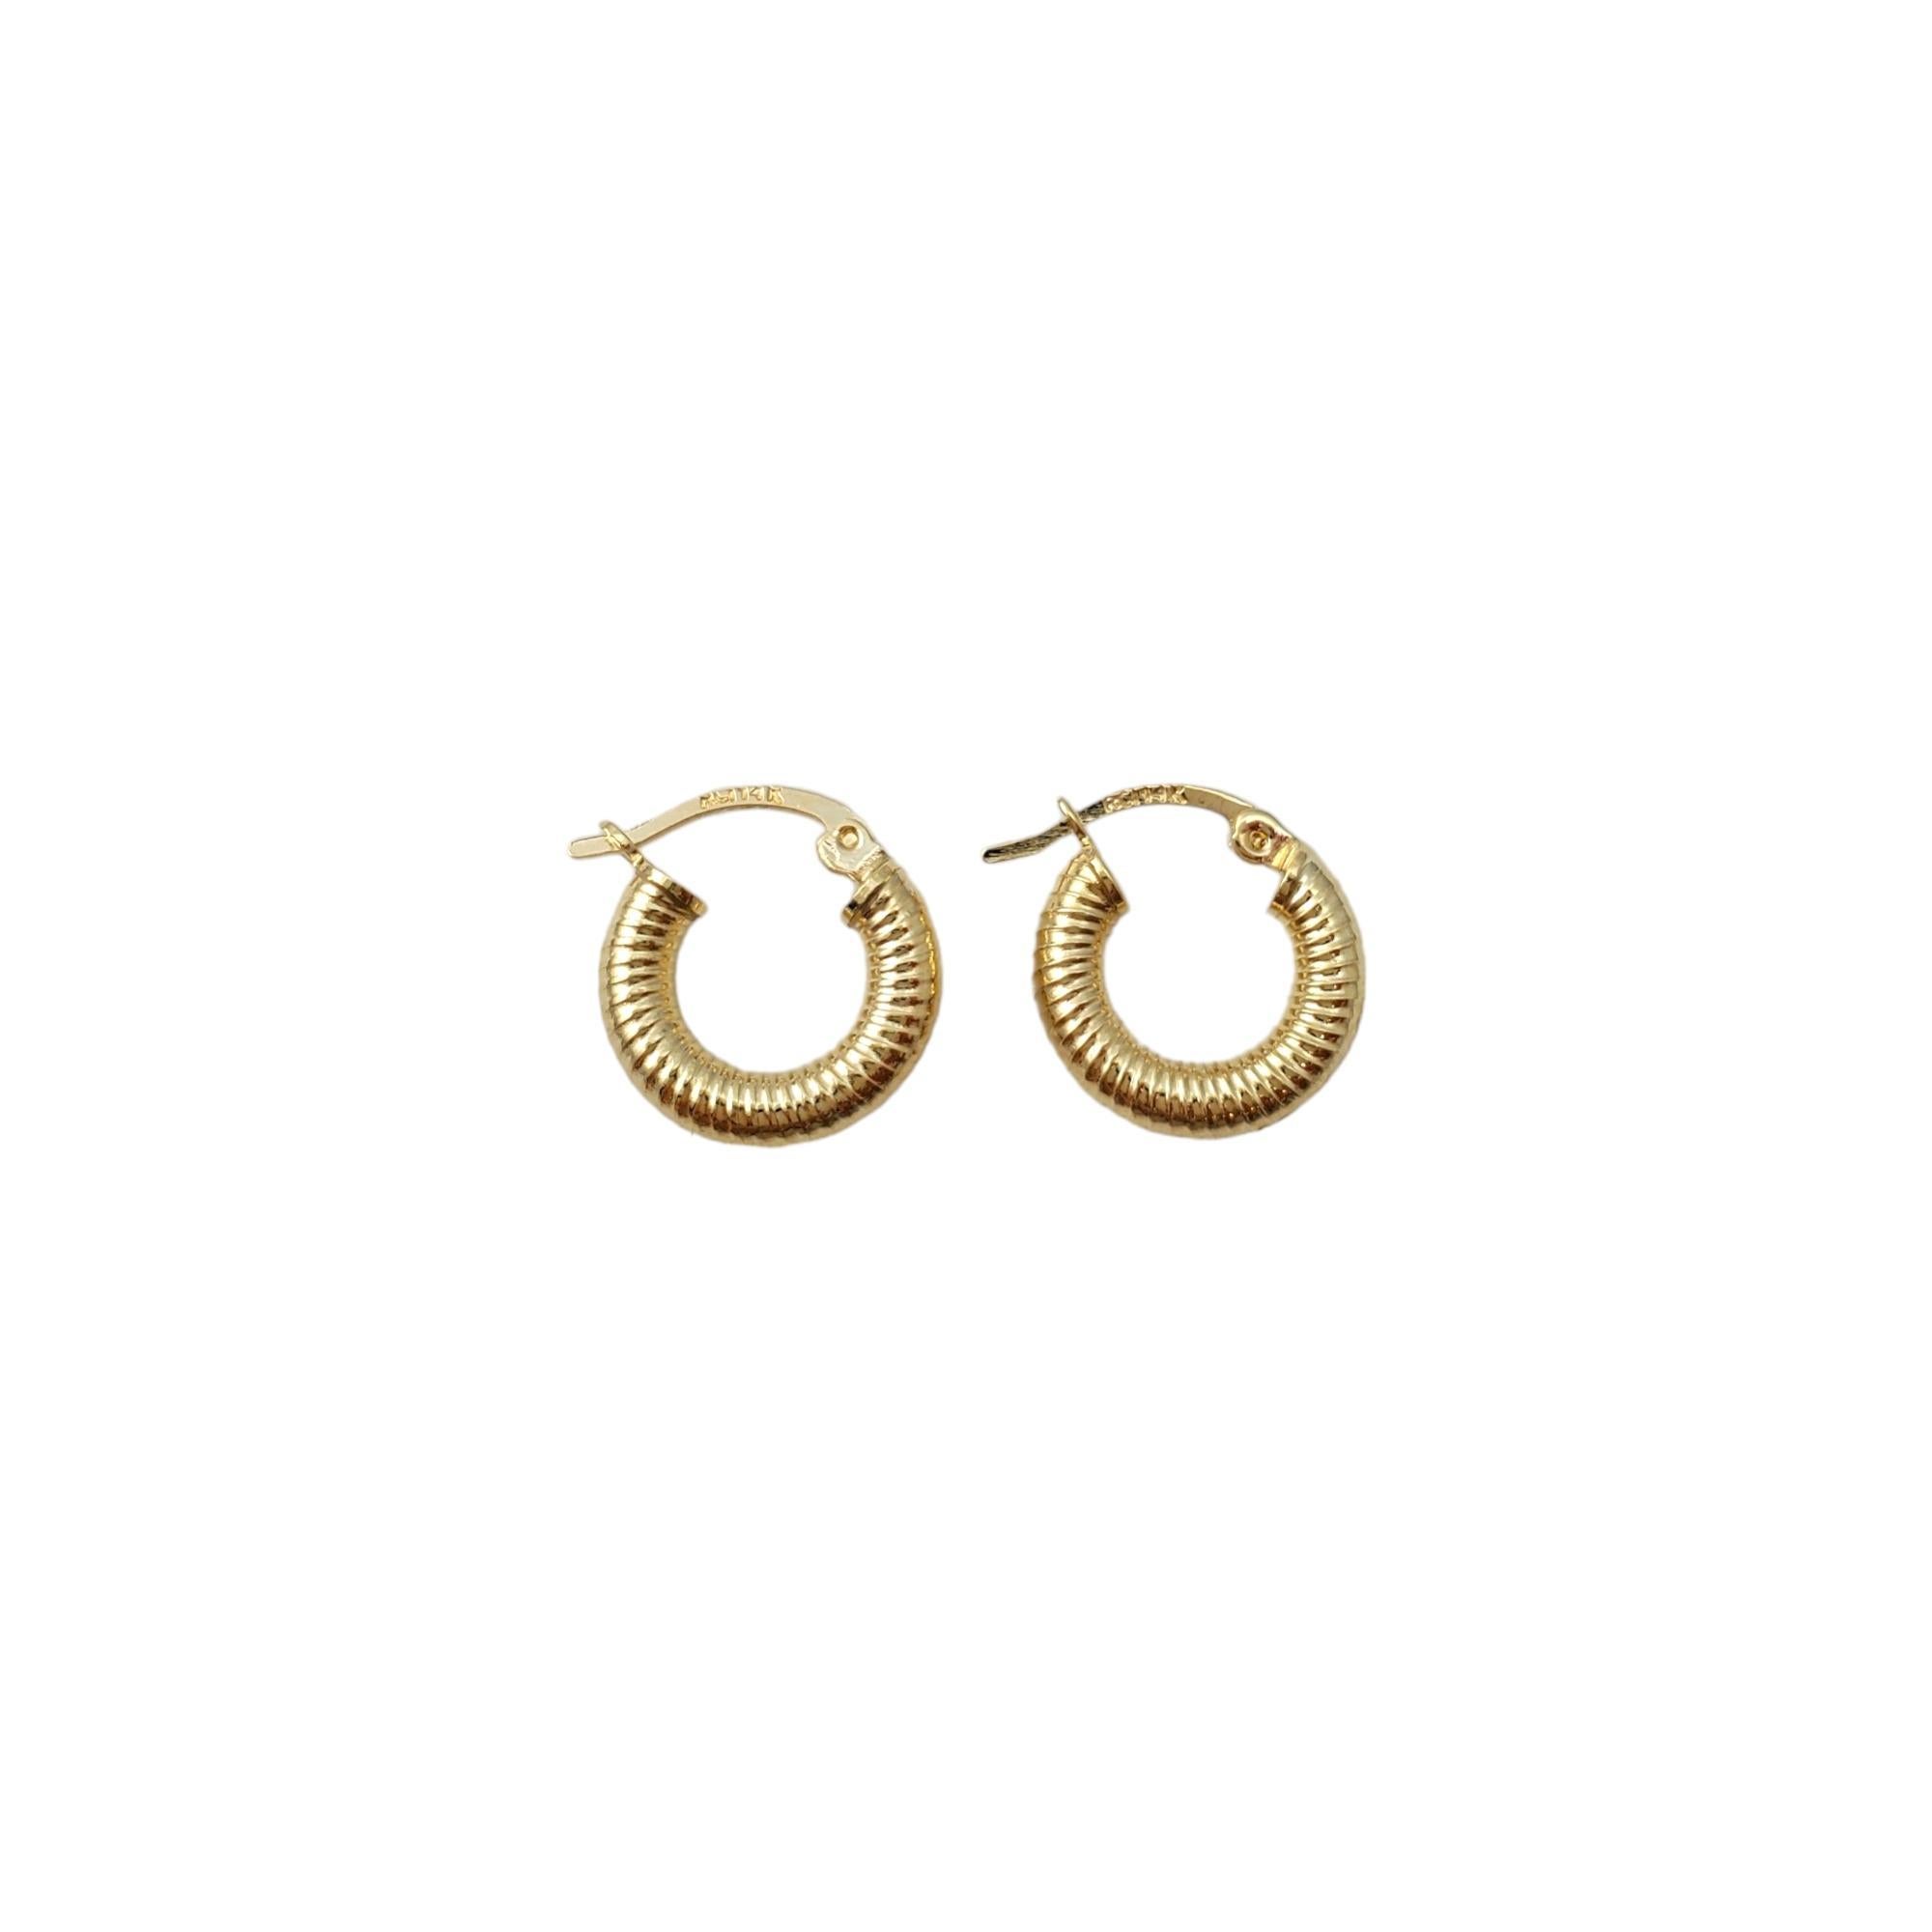 Vintage 14K Gelbgold gerippte kleine Ohrringe -

Diese zierlichen Ohrringe sind ein schönes Accessoire.

Größe: 13,5 mm x 3,0 mm x 3,0 mm

Gewicht: 0,7 dwt. / 1,1 gr.

Markiert: 14K RCI

Sehr guter Zustand, professionell poliert.

Wird in einem